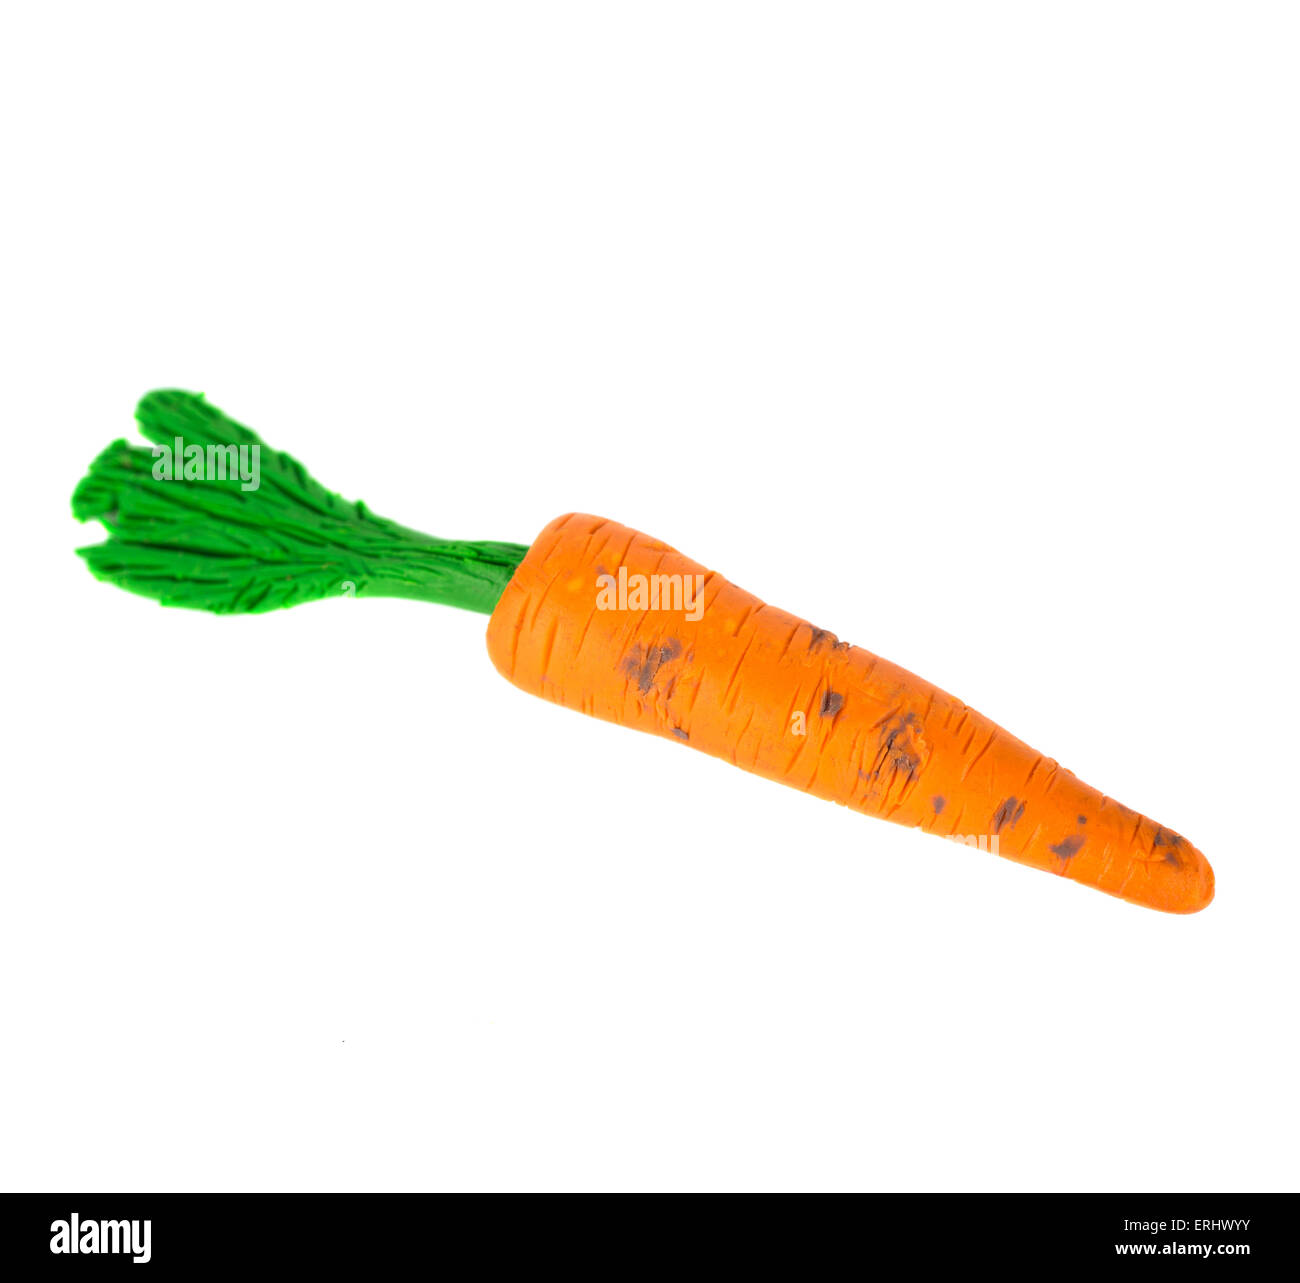 Hecho a mano la plastilina o arcilla para modelar la figura de una zanahoria sobre fondo blanco. Foto de stock